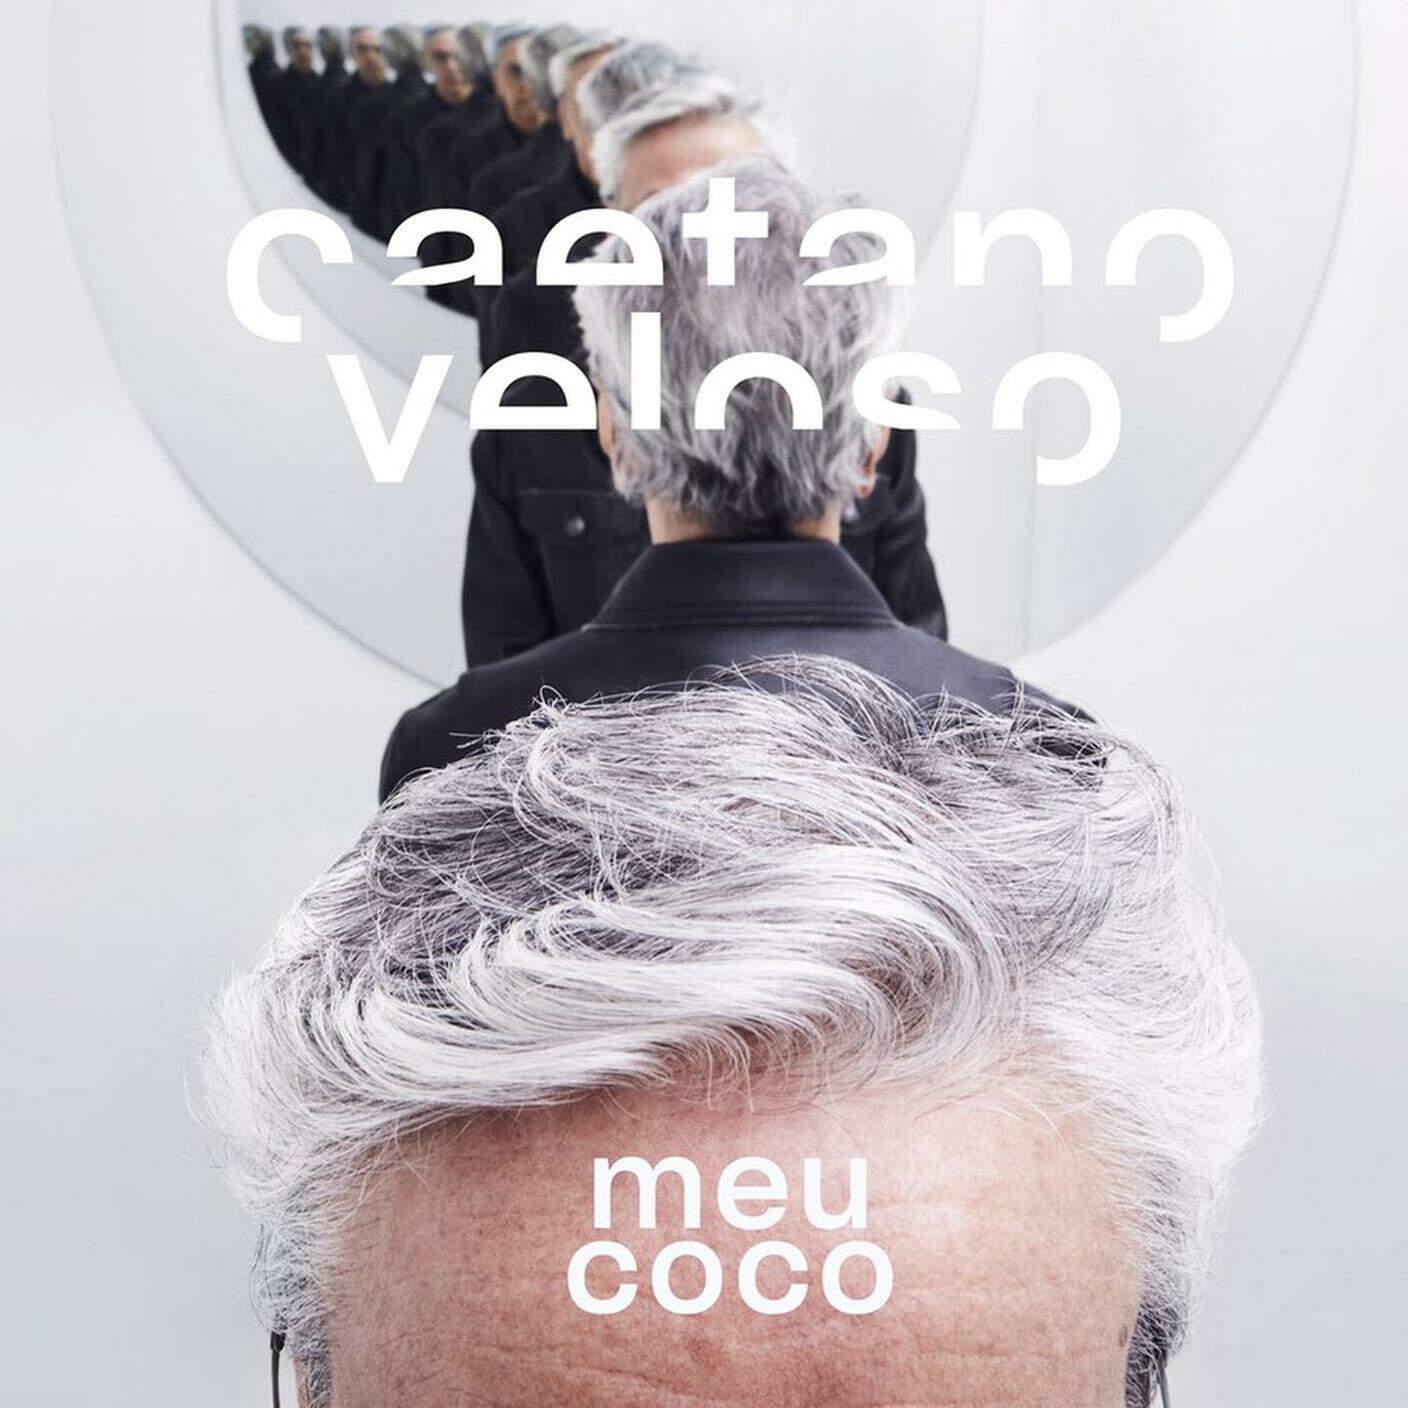 “Meu coco” di Caetano Veloso, Sony Music (dettaglio copertina)